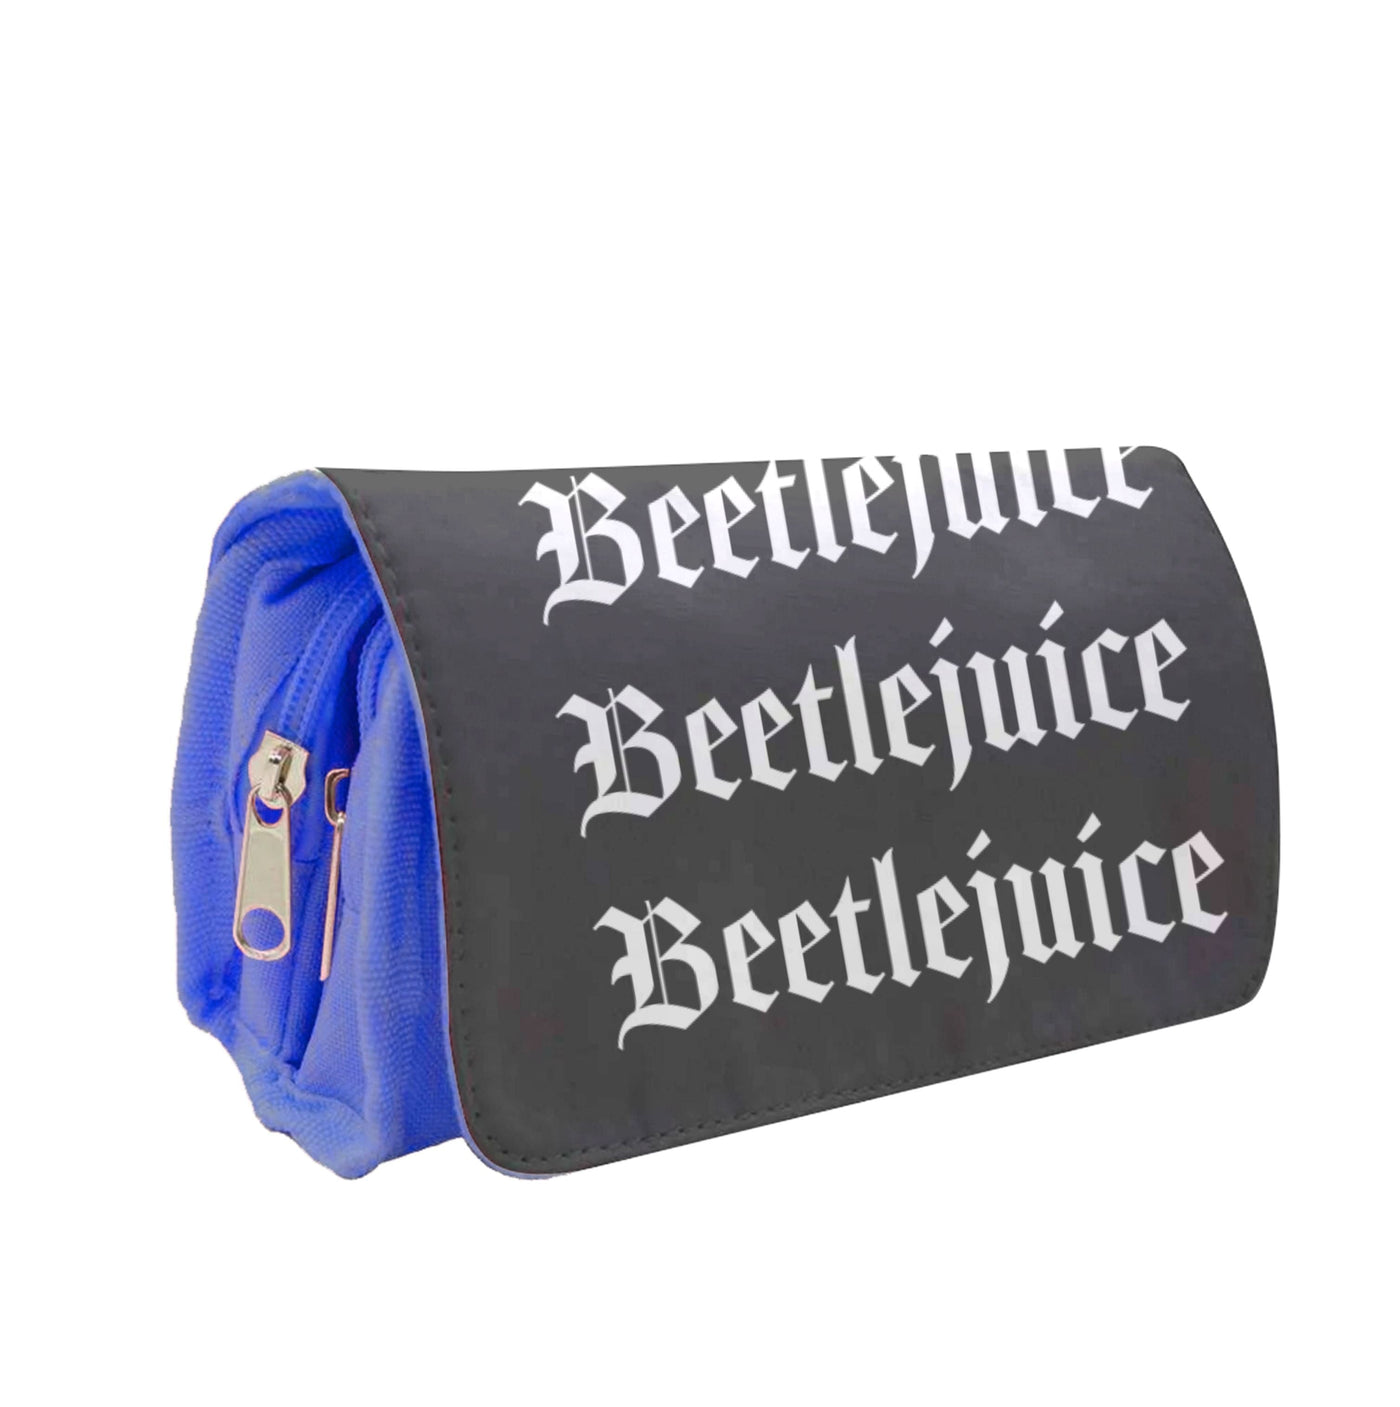 Beetlejuice Pencil Case